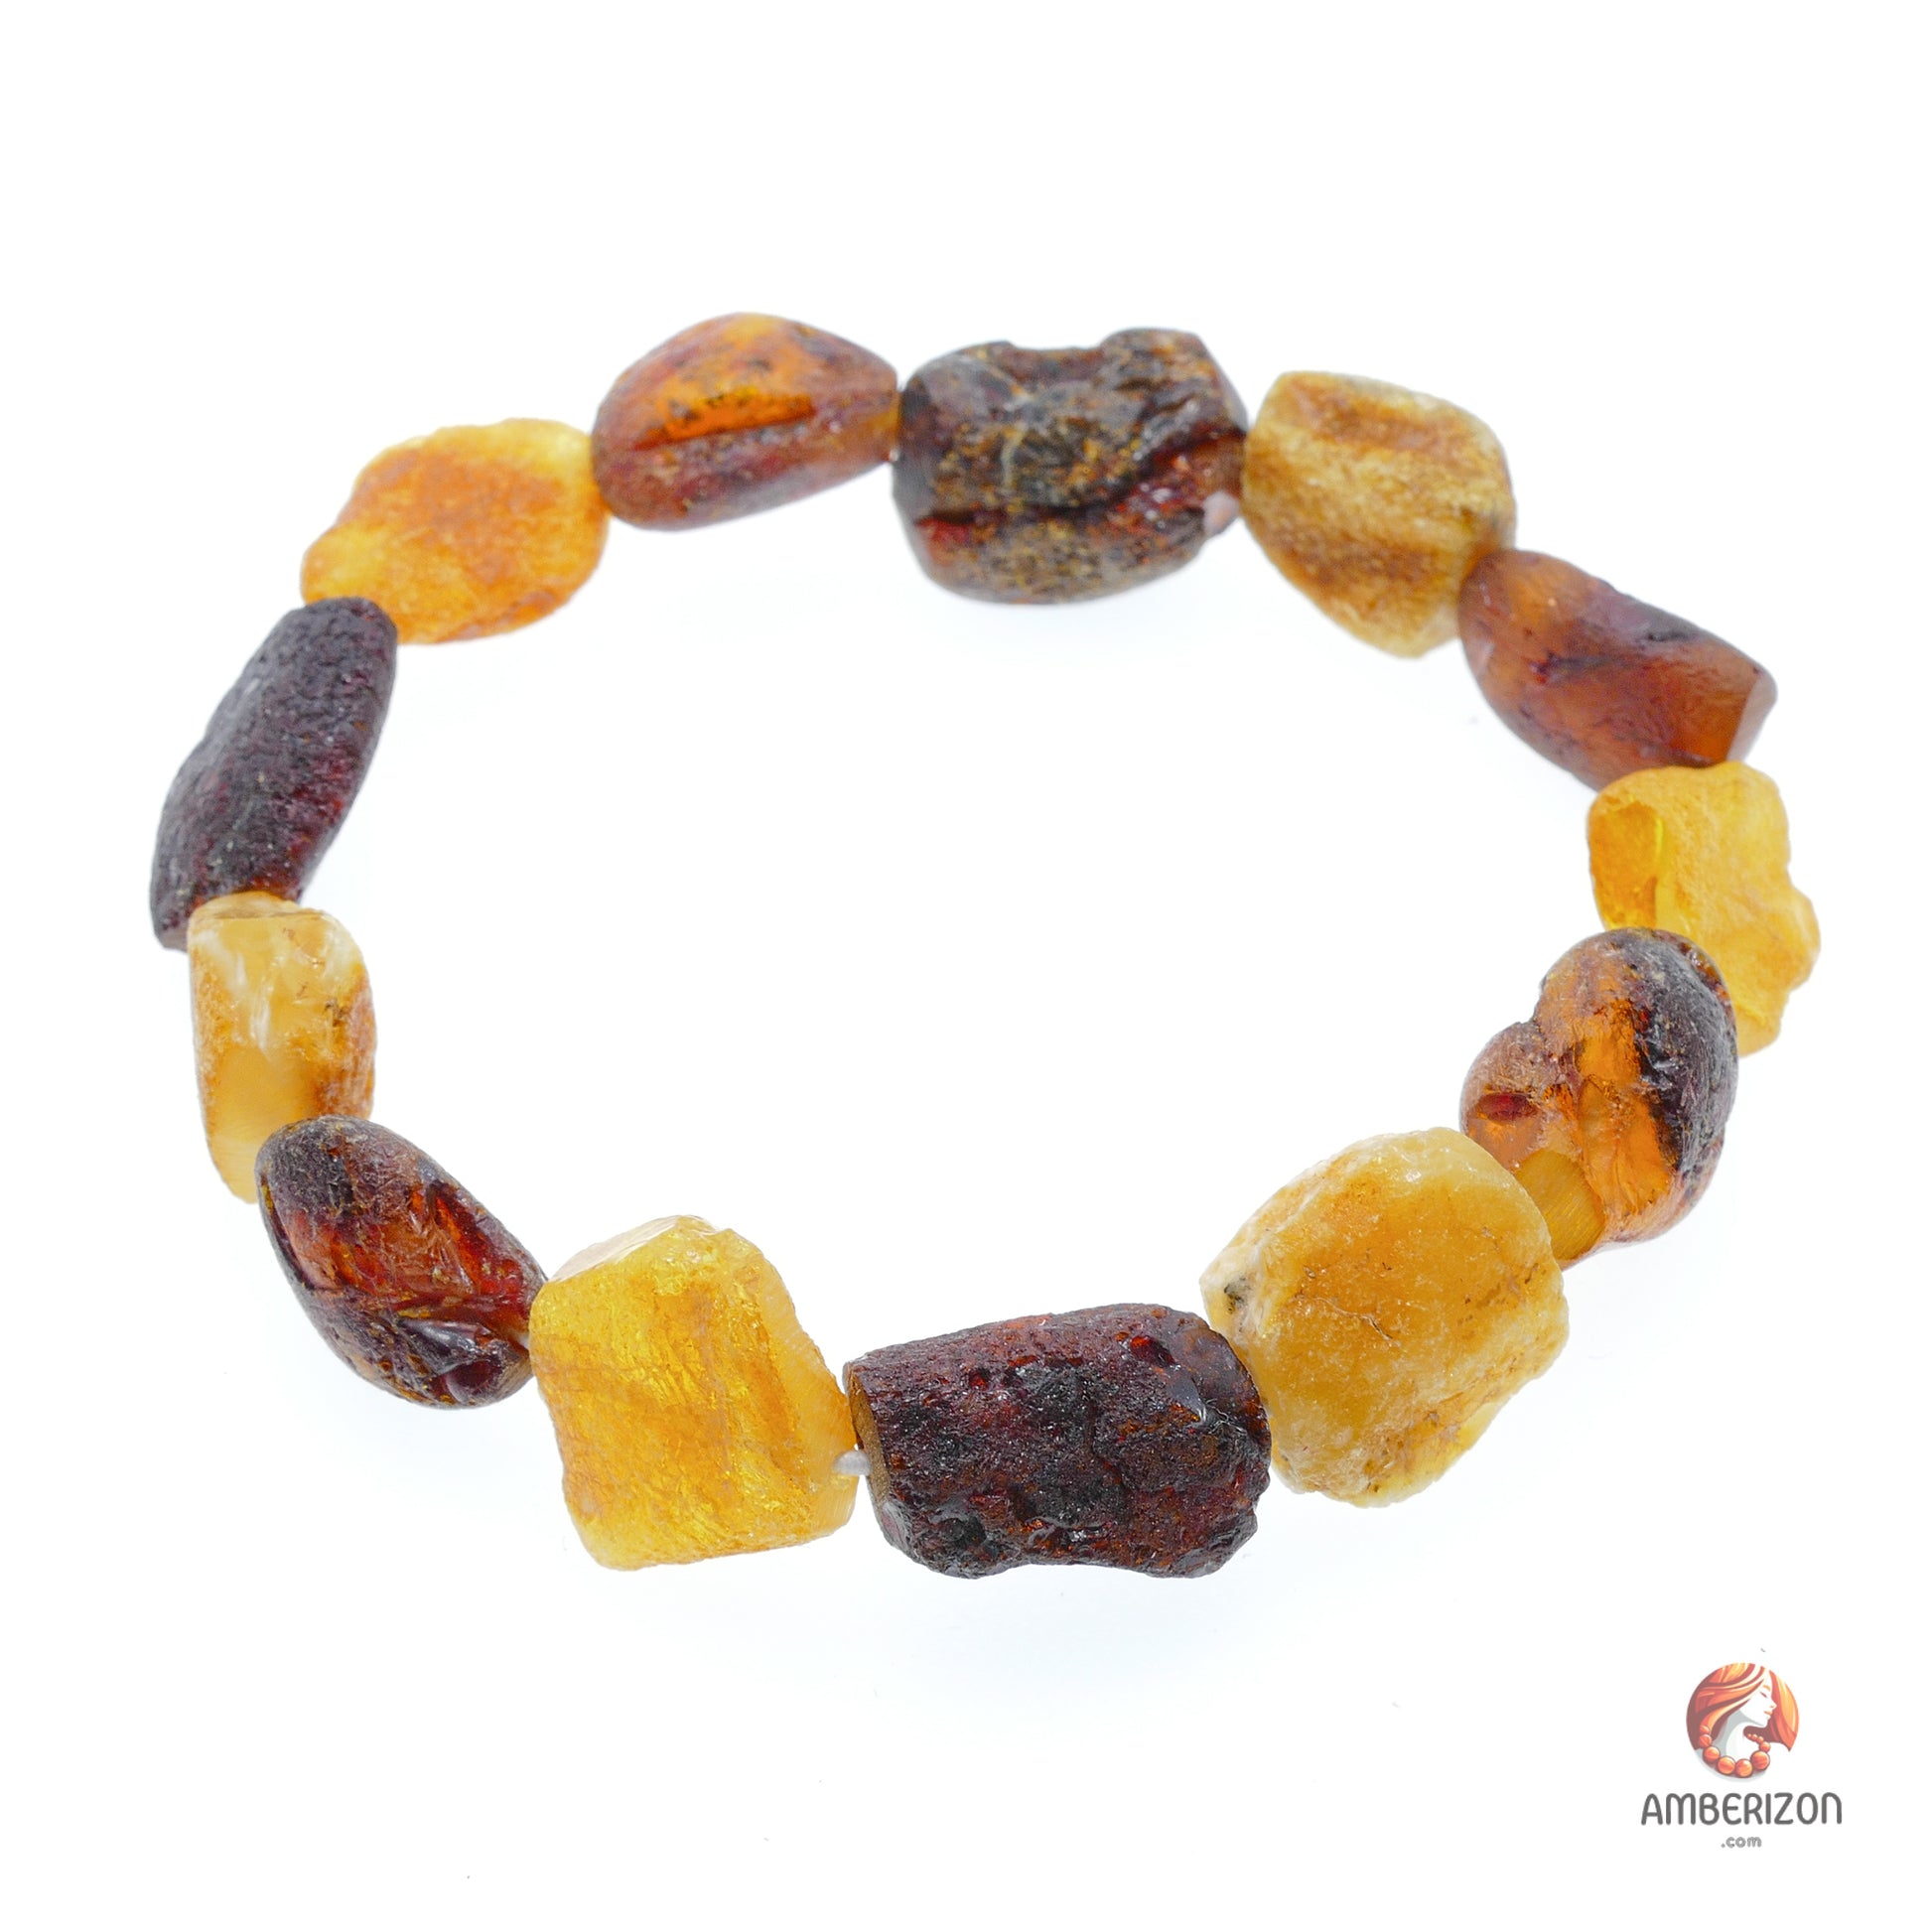 Unpolished raw amber stone bracelet - Natura freeform organic beads - Stretchy